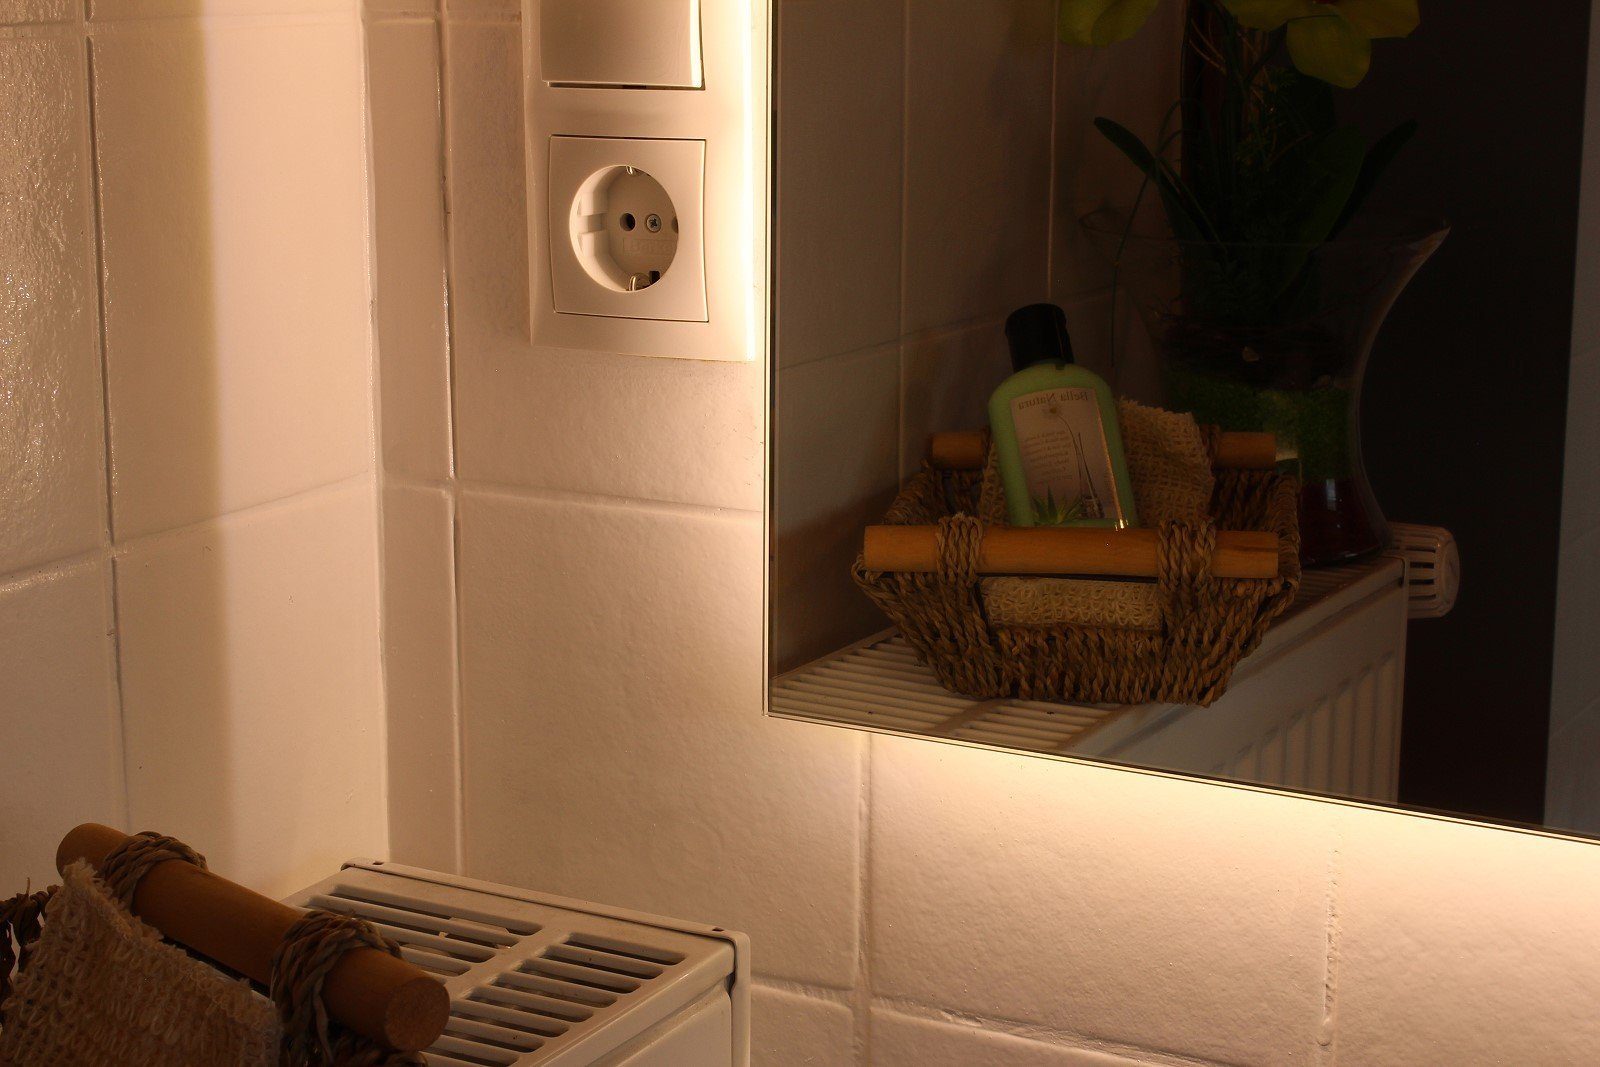 Spiegel Beleuchtung Led in Nova 5mm MySpiegel.de mit Hinterleuchteter Badspiegel Badspiegel